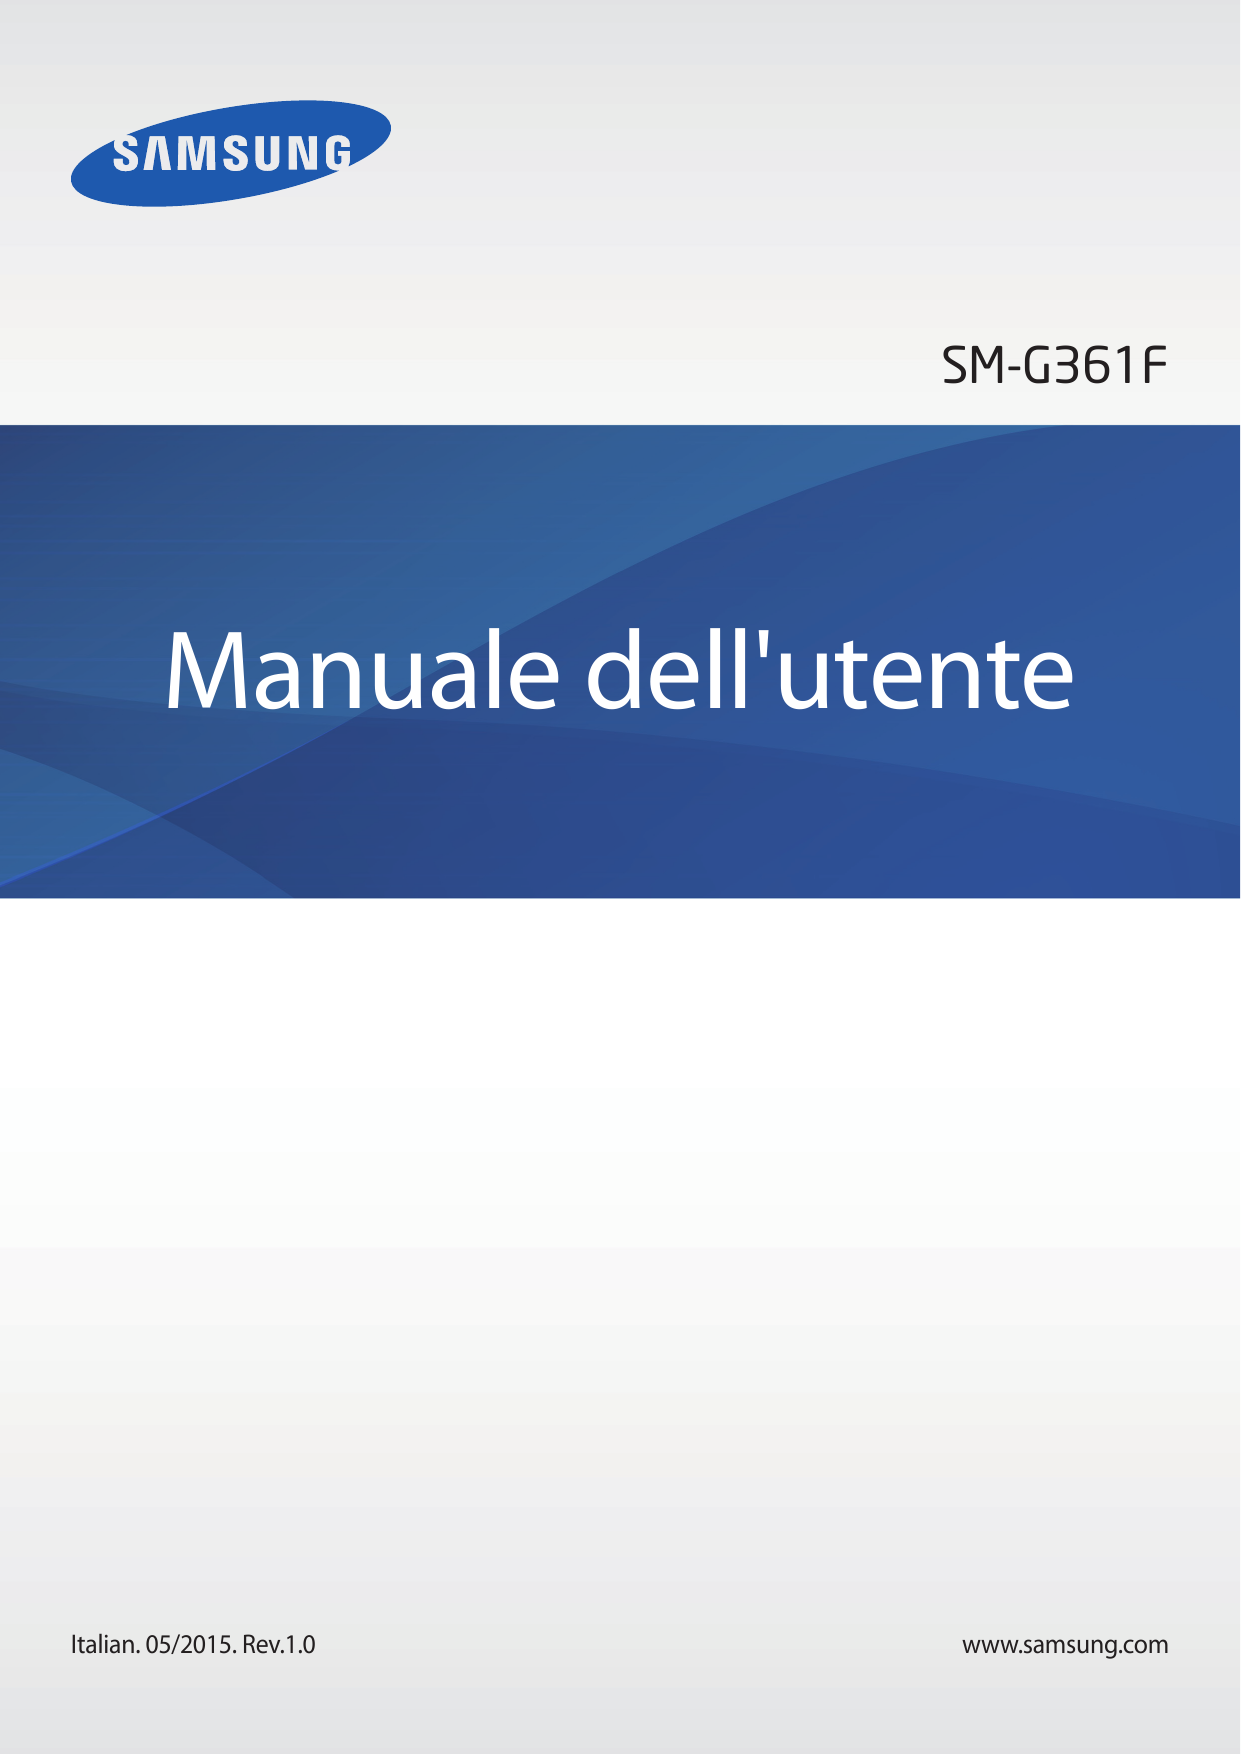 SM-G361FManuale dell'utenteItalian. 05/2015. Rev.1.0www.samsung.com